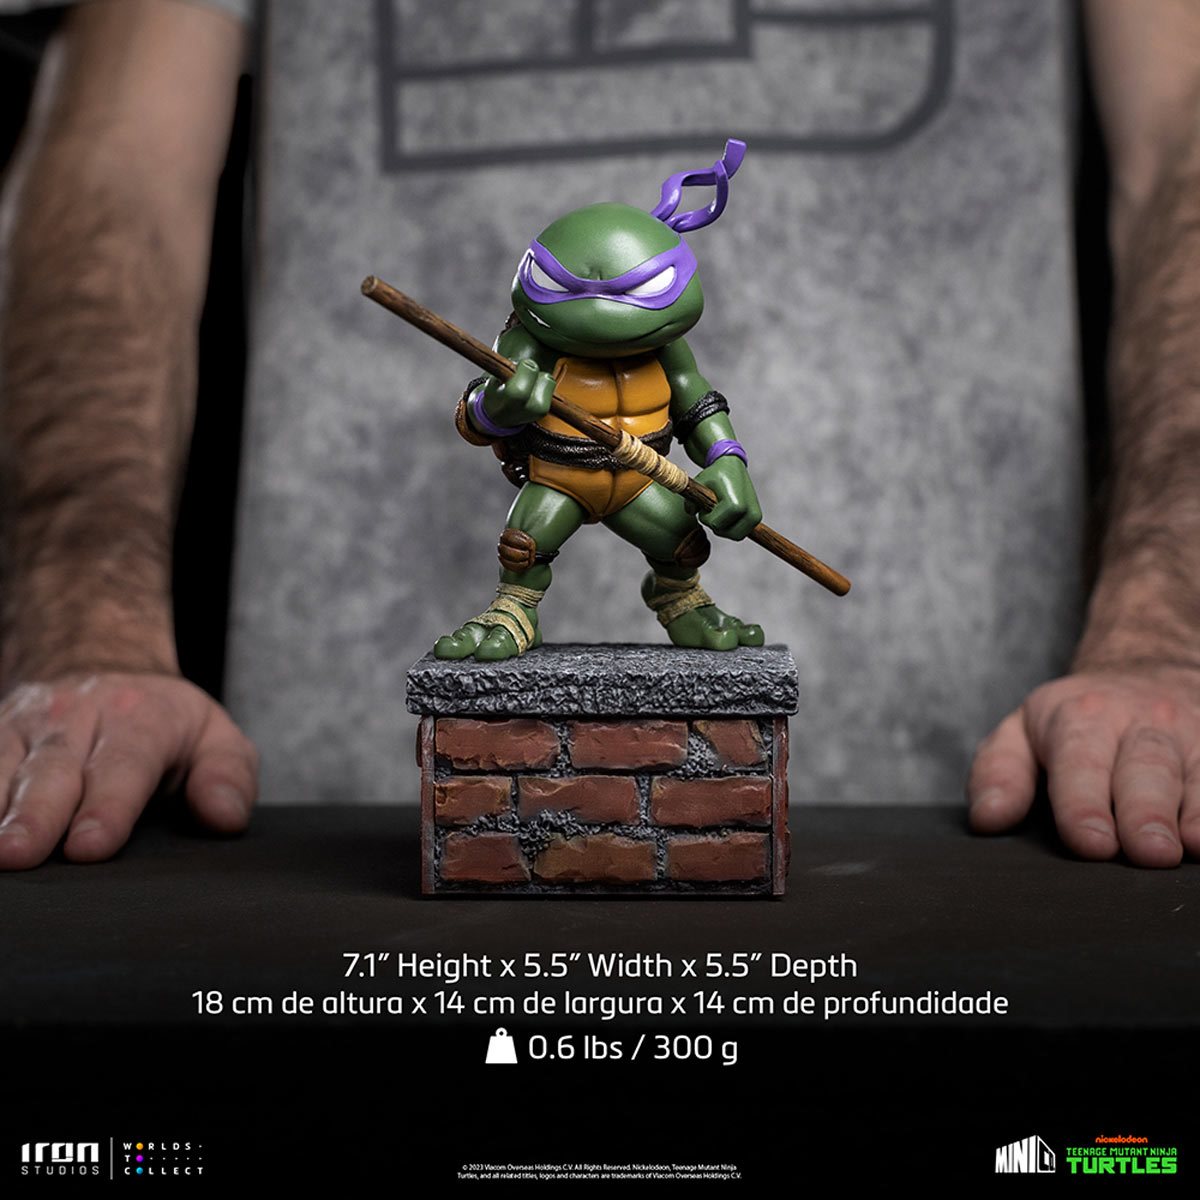 Neca Teenage Mutant Ninja Turtles Donatello 18 cm Figure